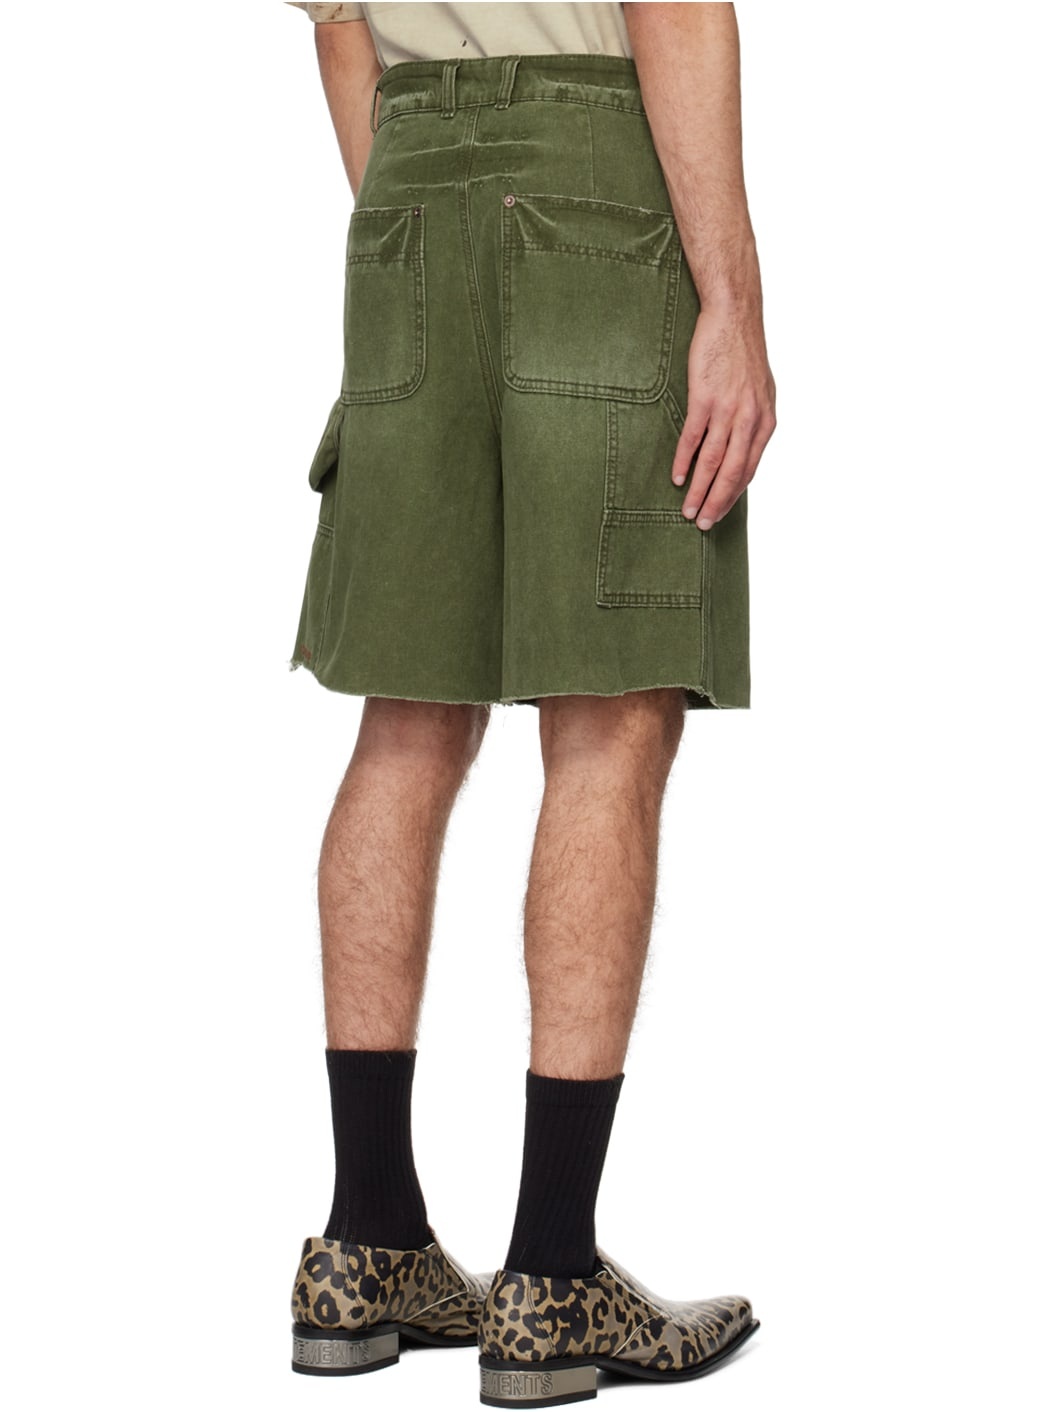 Khaki Faded Cargo Shorts - 3